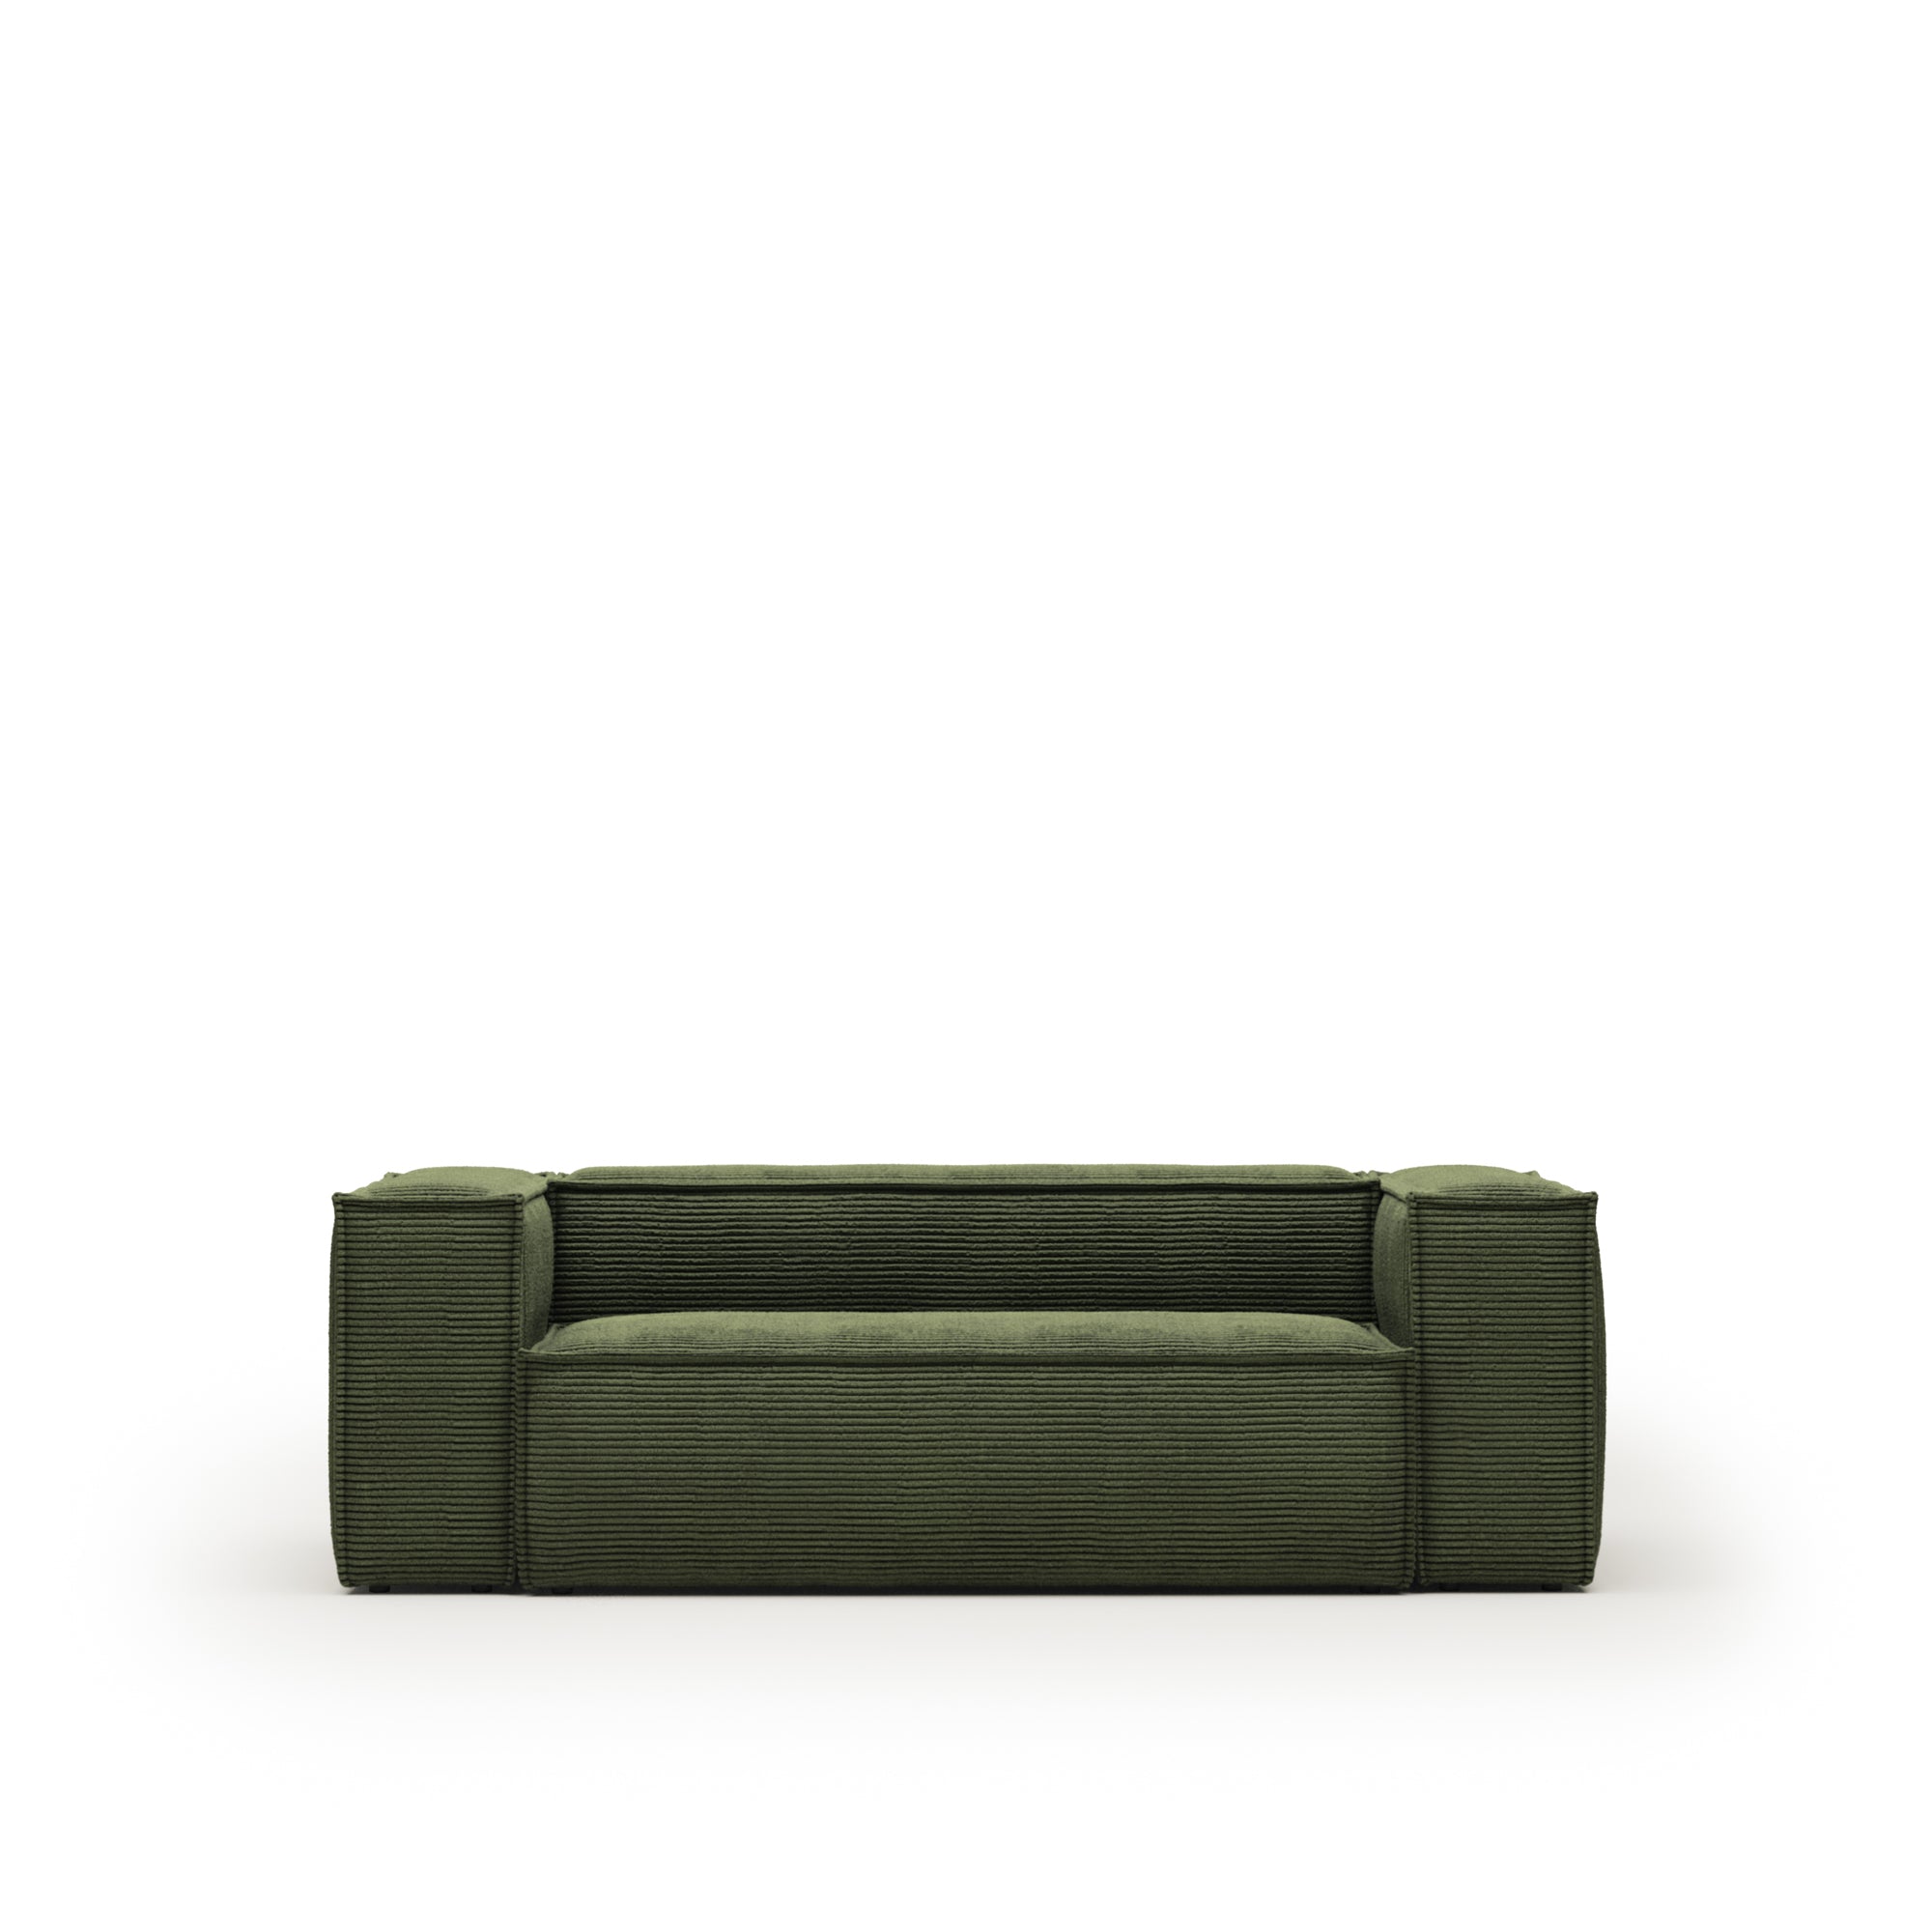 Blok 2 személyes kanapé, zöld, széles varrású kordbársony, 210 cm